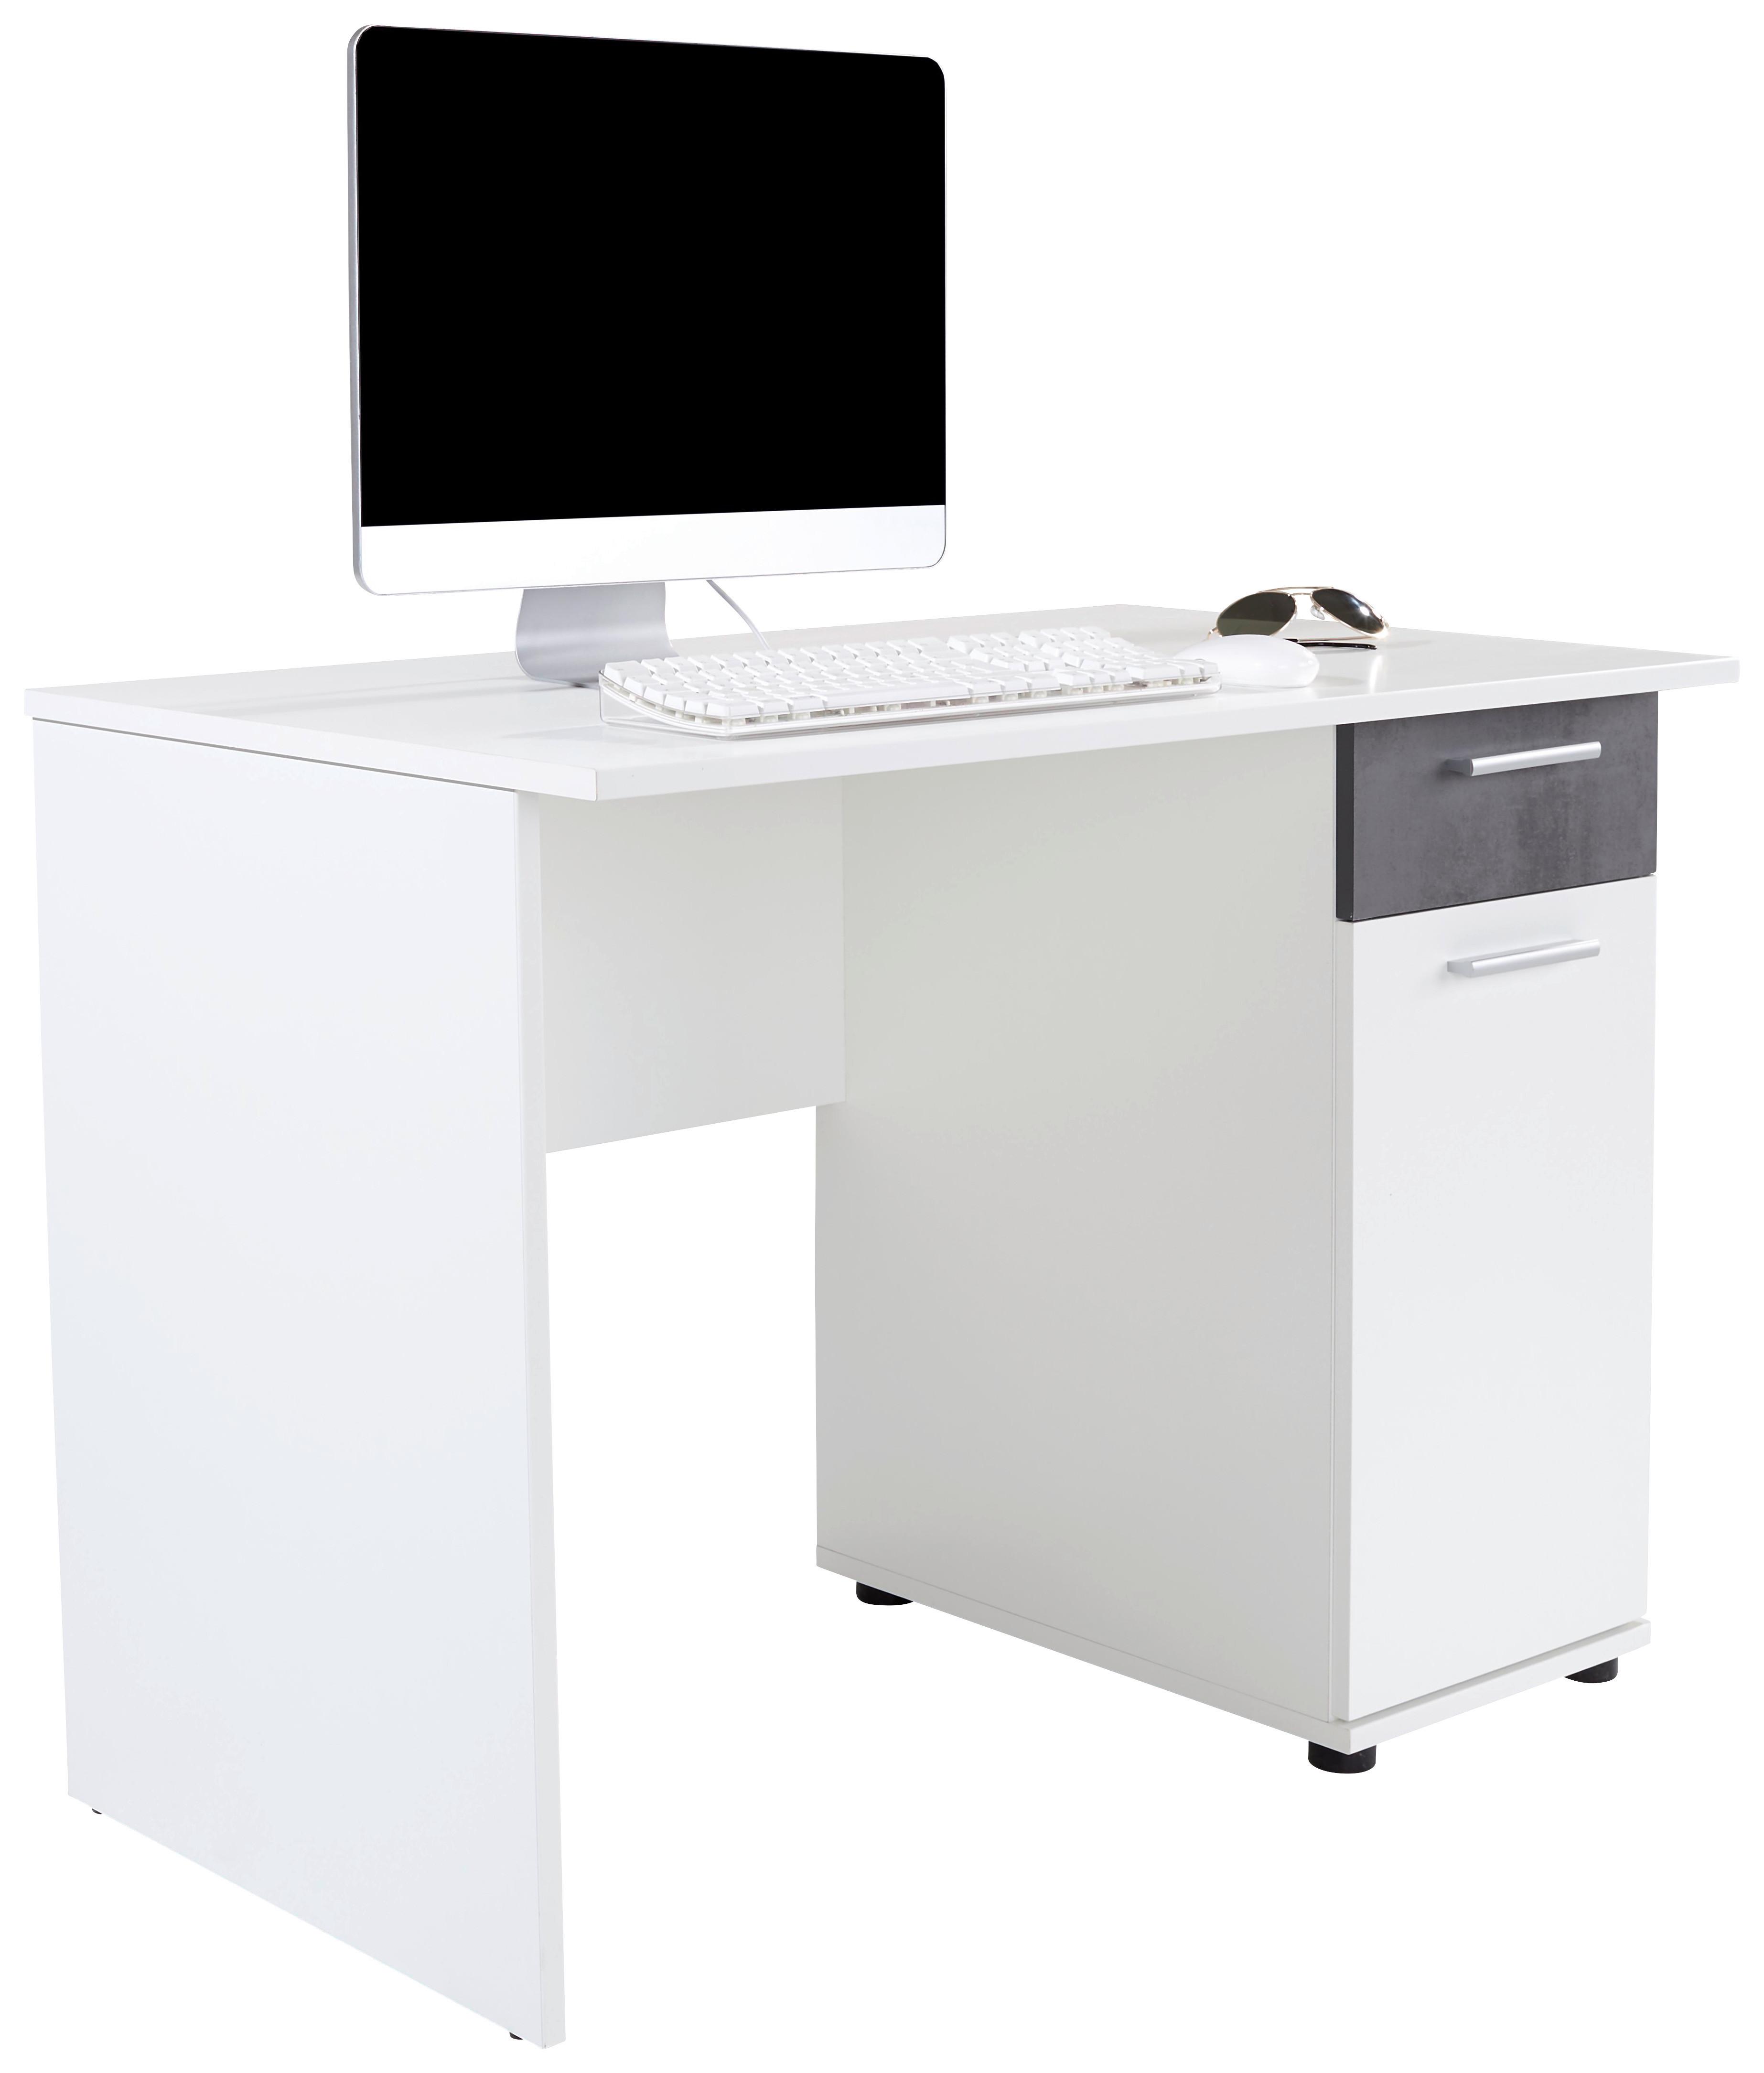 Schreibtisch mit Stauraum B 109cm H 77cm Star, Weiß - Dunkelgrau/Weiß, KONVENTIONELL, Holzwerkstoff (109/60/77cm)